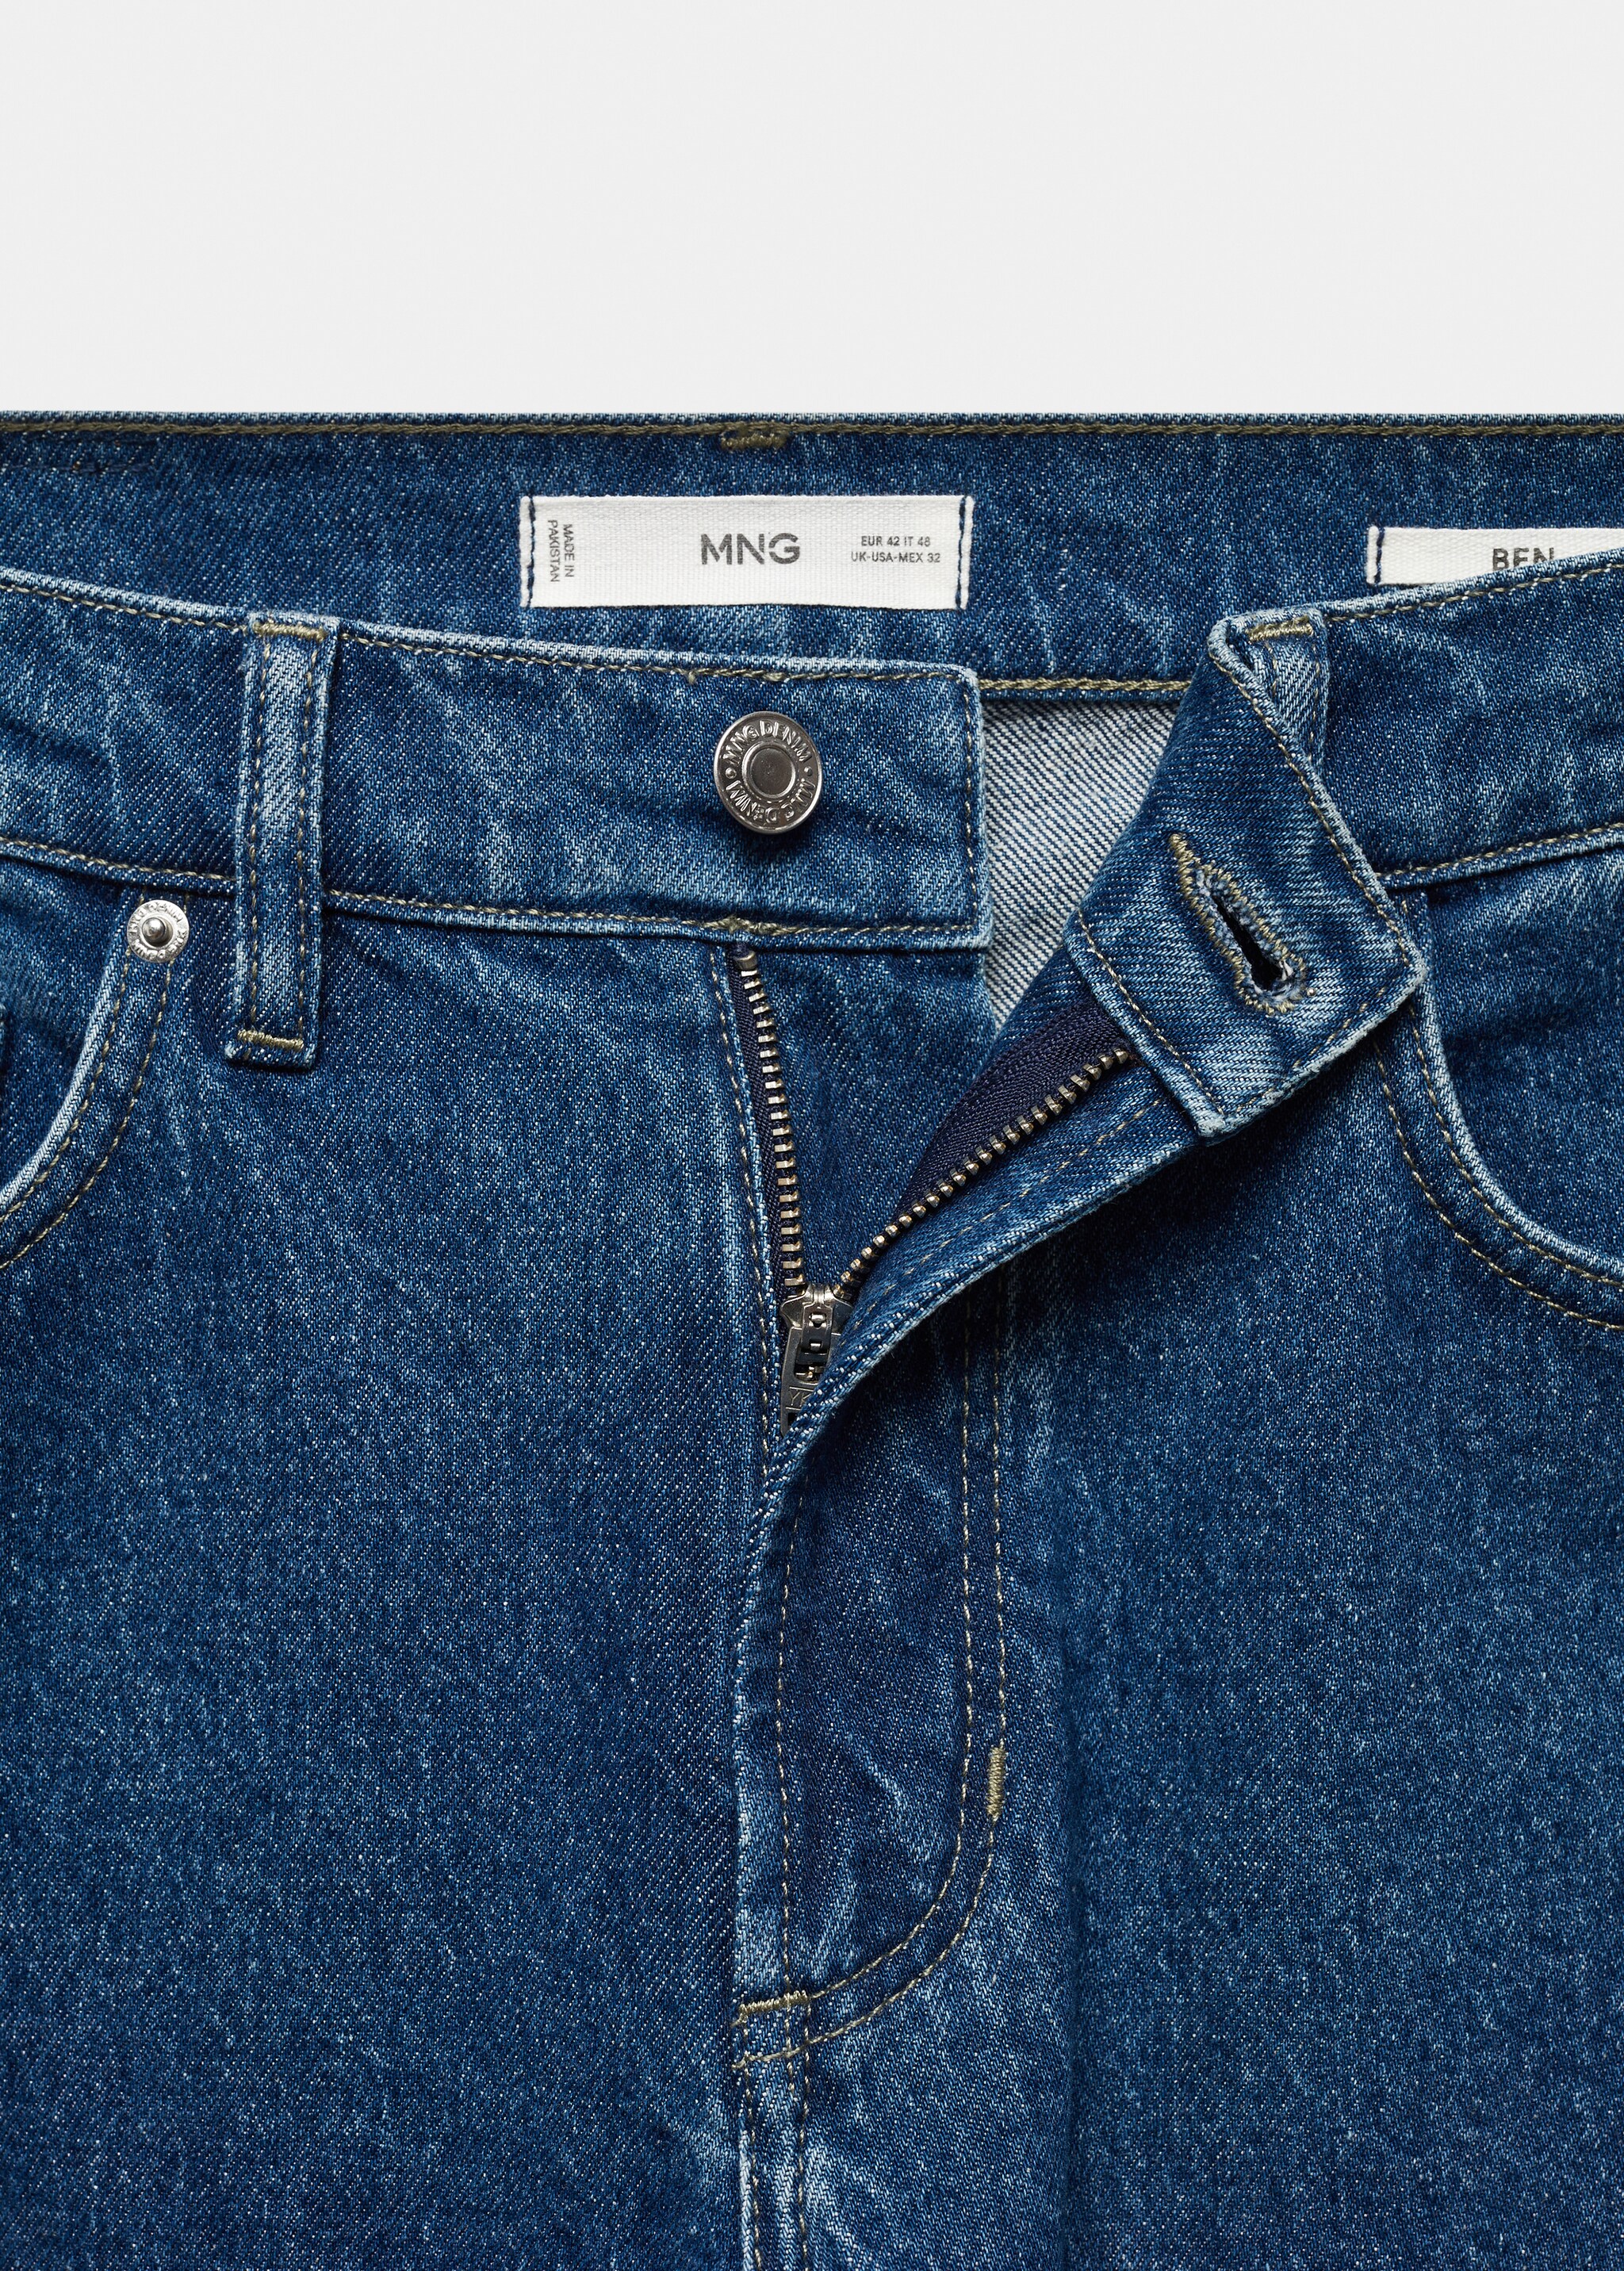 Jeans Ben tappered fit - Detalle del artículo 8